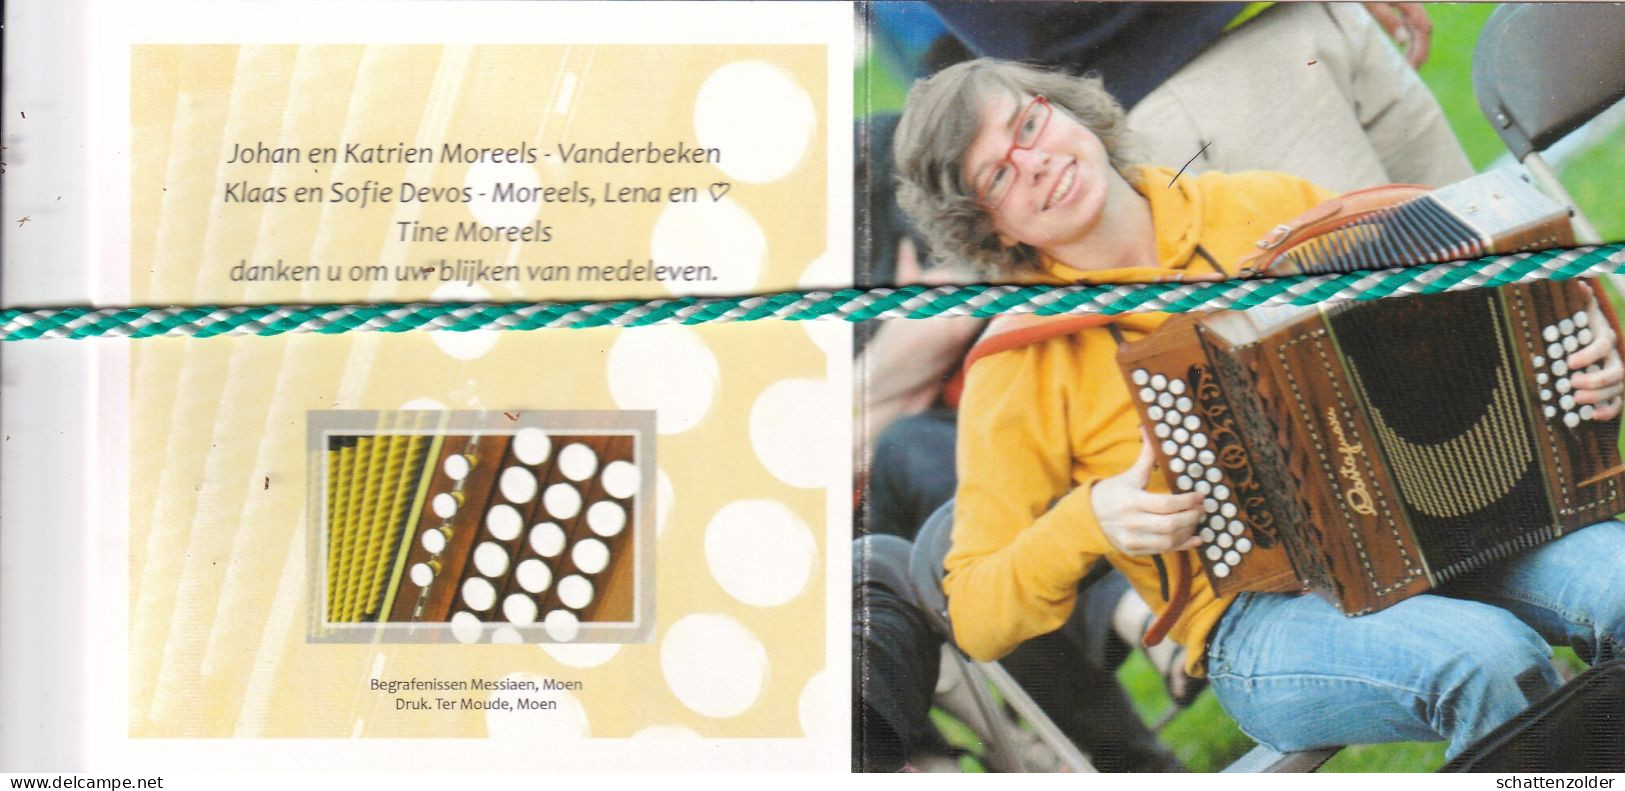 Eline Moreels-Vanderbeken, Kortrijk 1987, 2012. Foto Accordeon - Overlijden